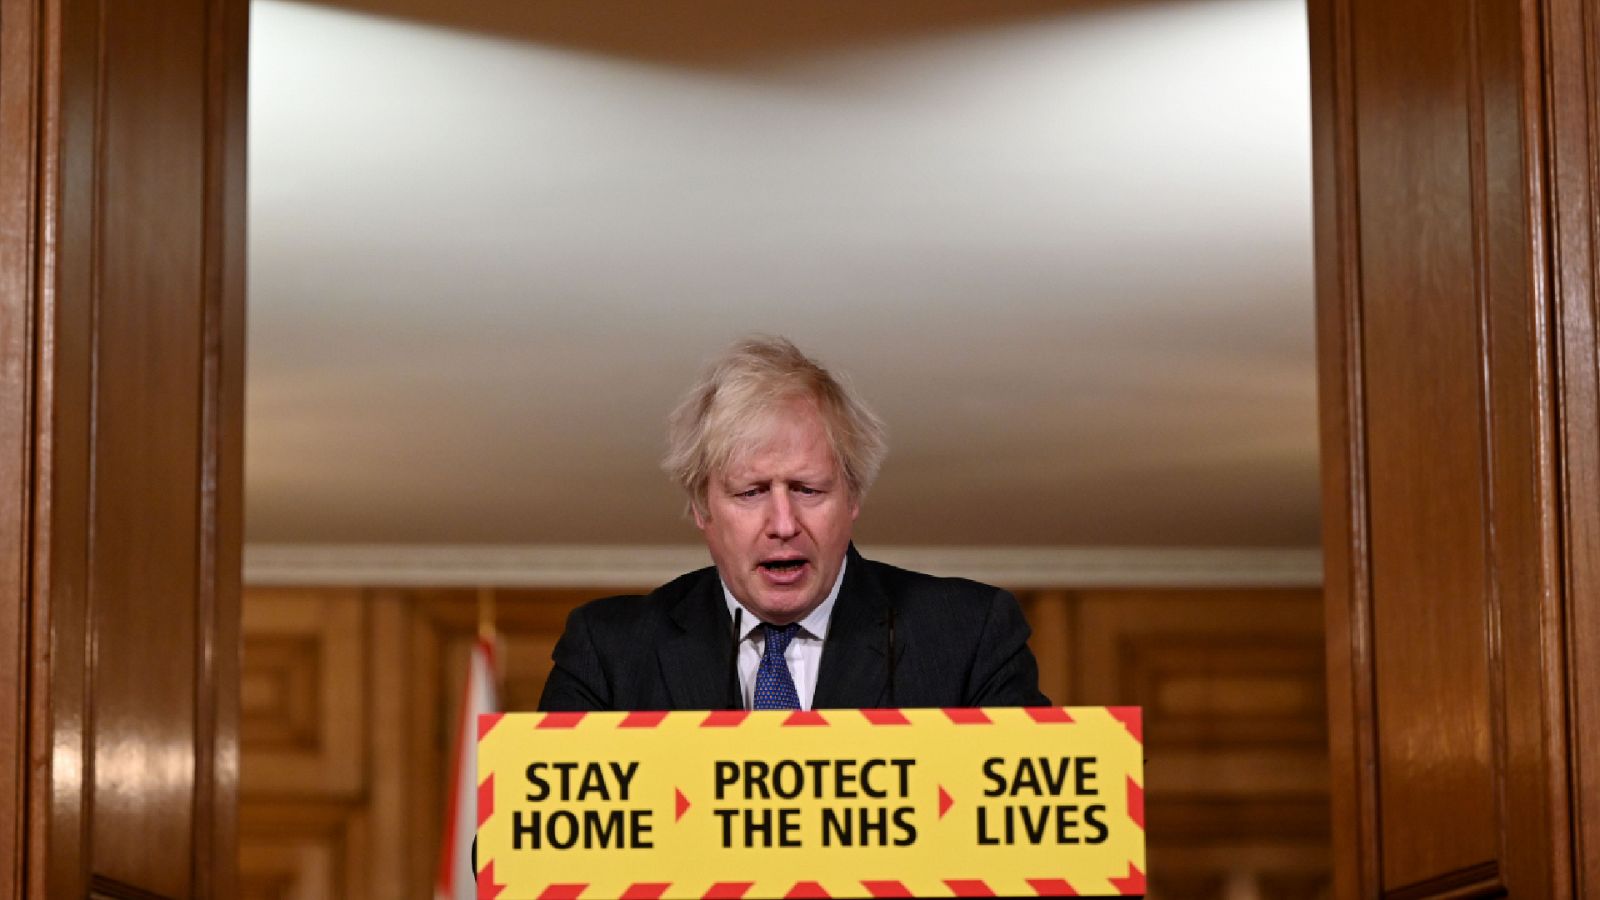  Boletines RNE - Boris Johnson asegura que la cepa británica podría ser más letal - Escuchar ahora 